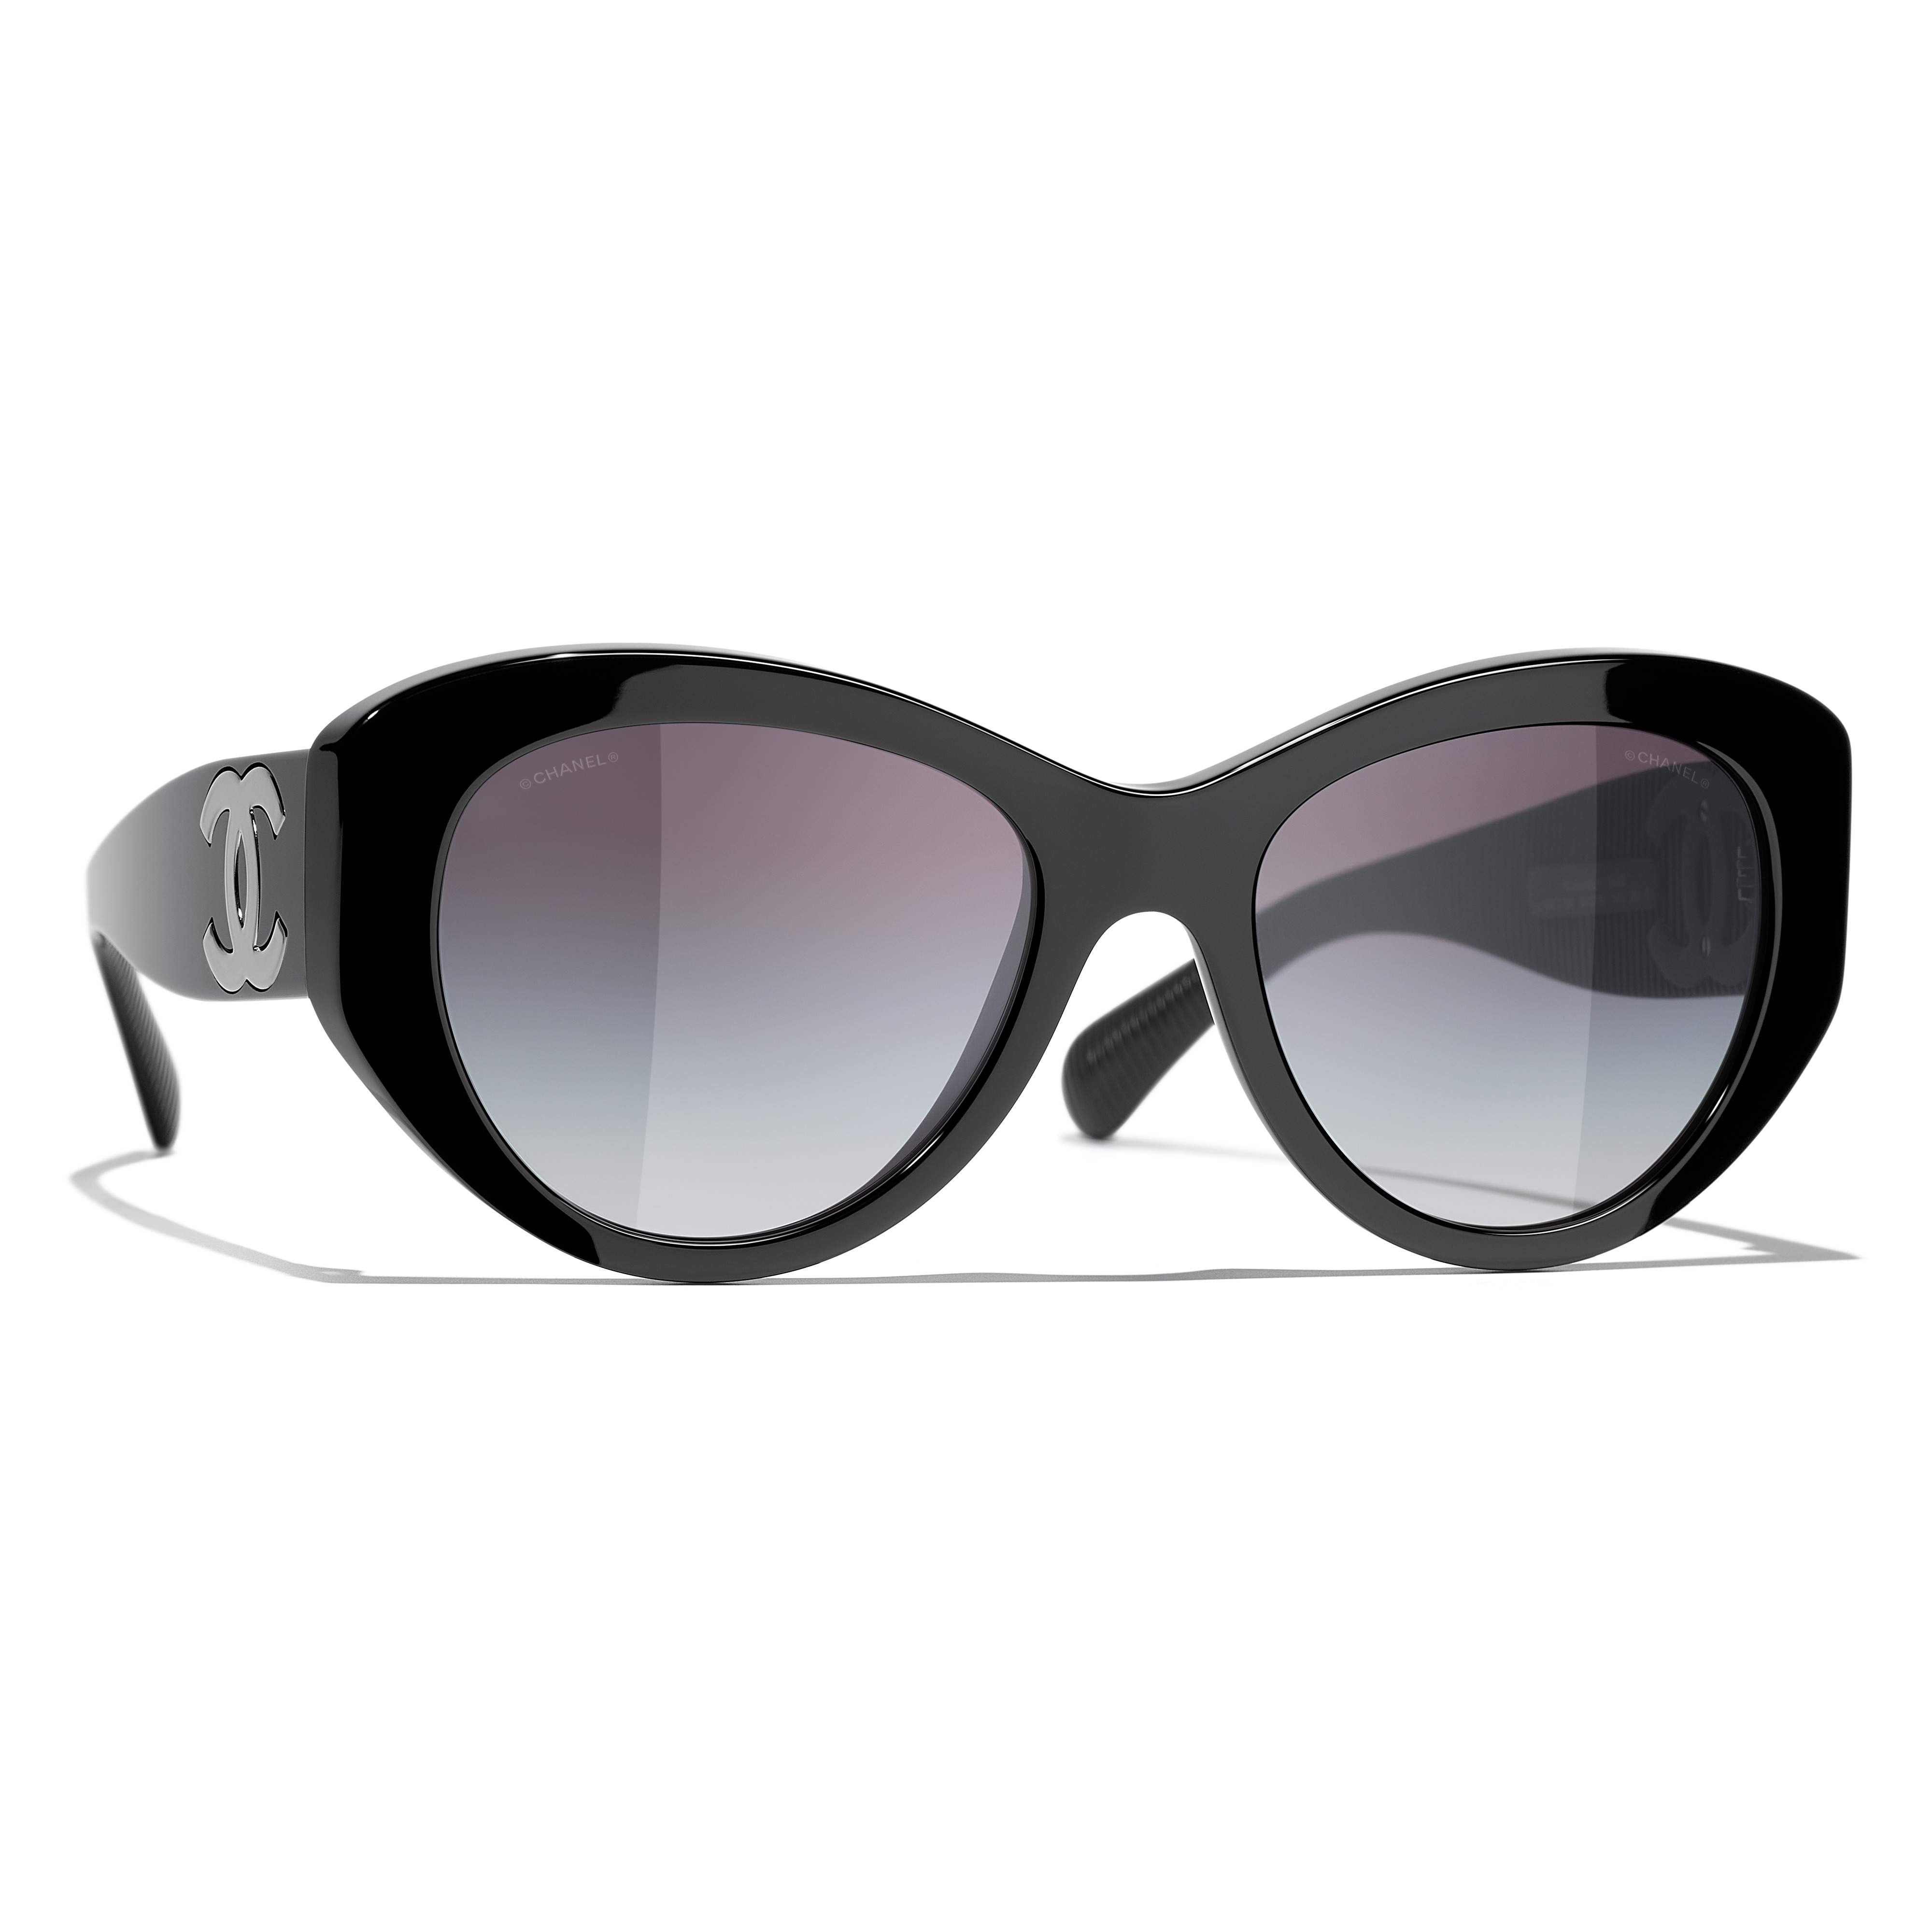 Sunglasses CHANEL CH5492 1047/S6 54-19 Black in stock